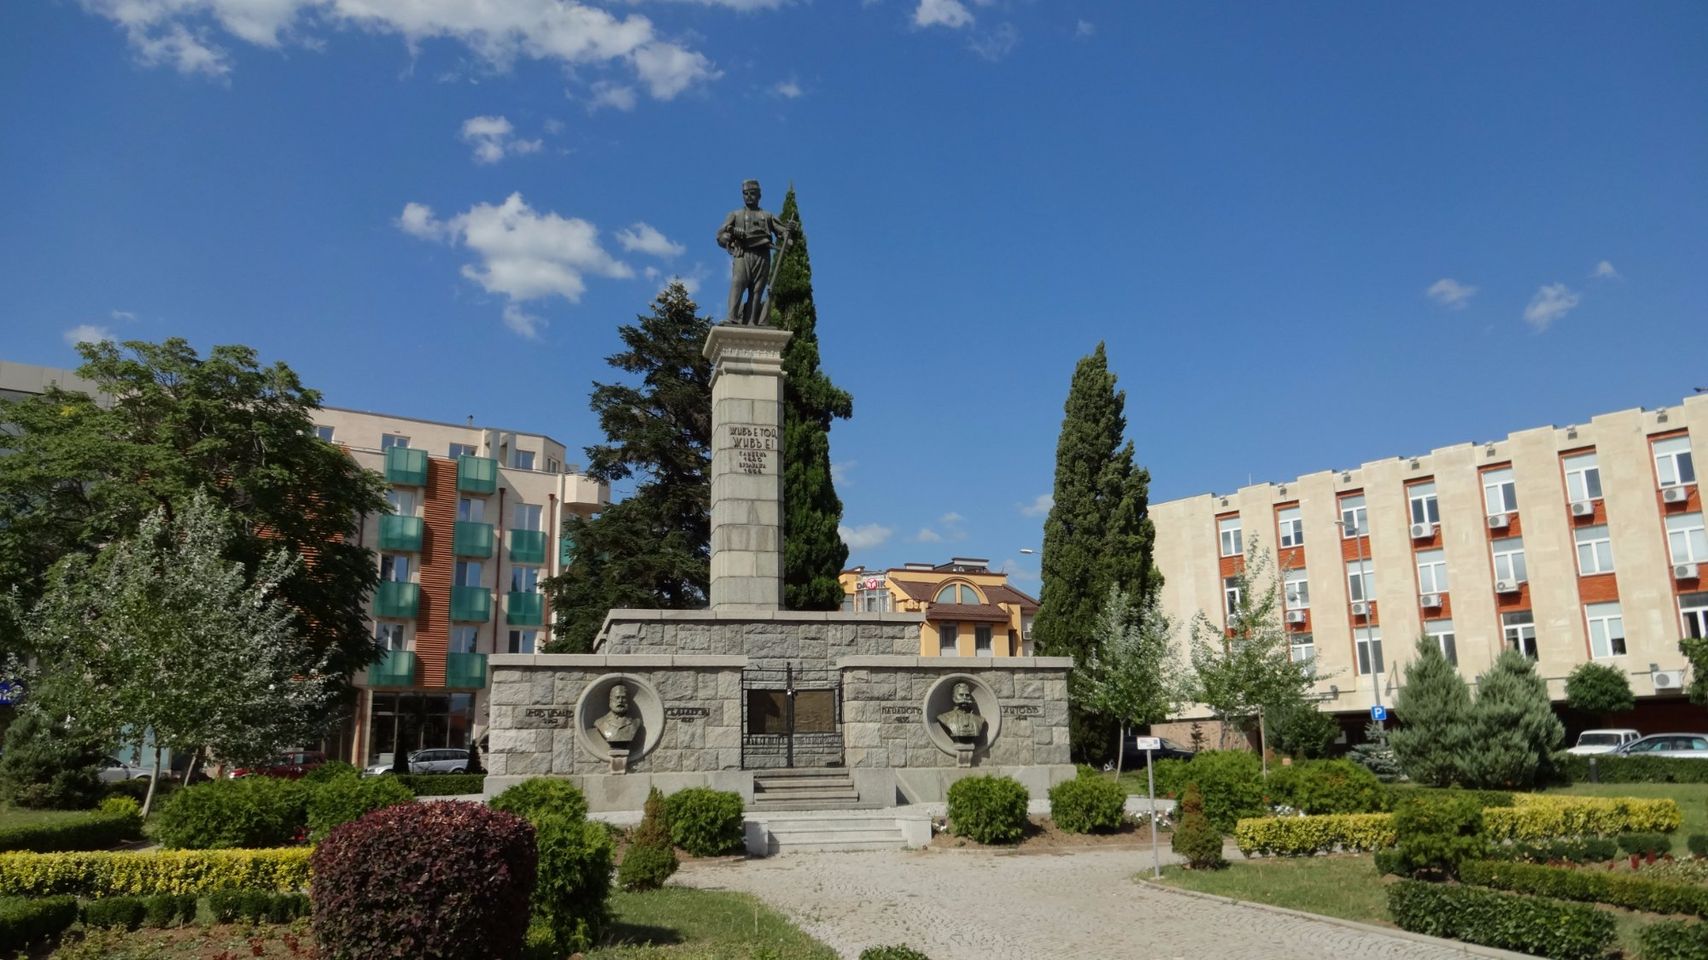 Hadzhi Dimitar Monument